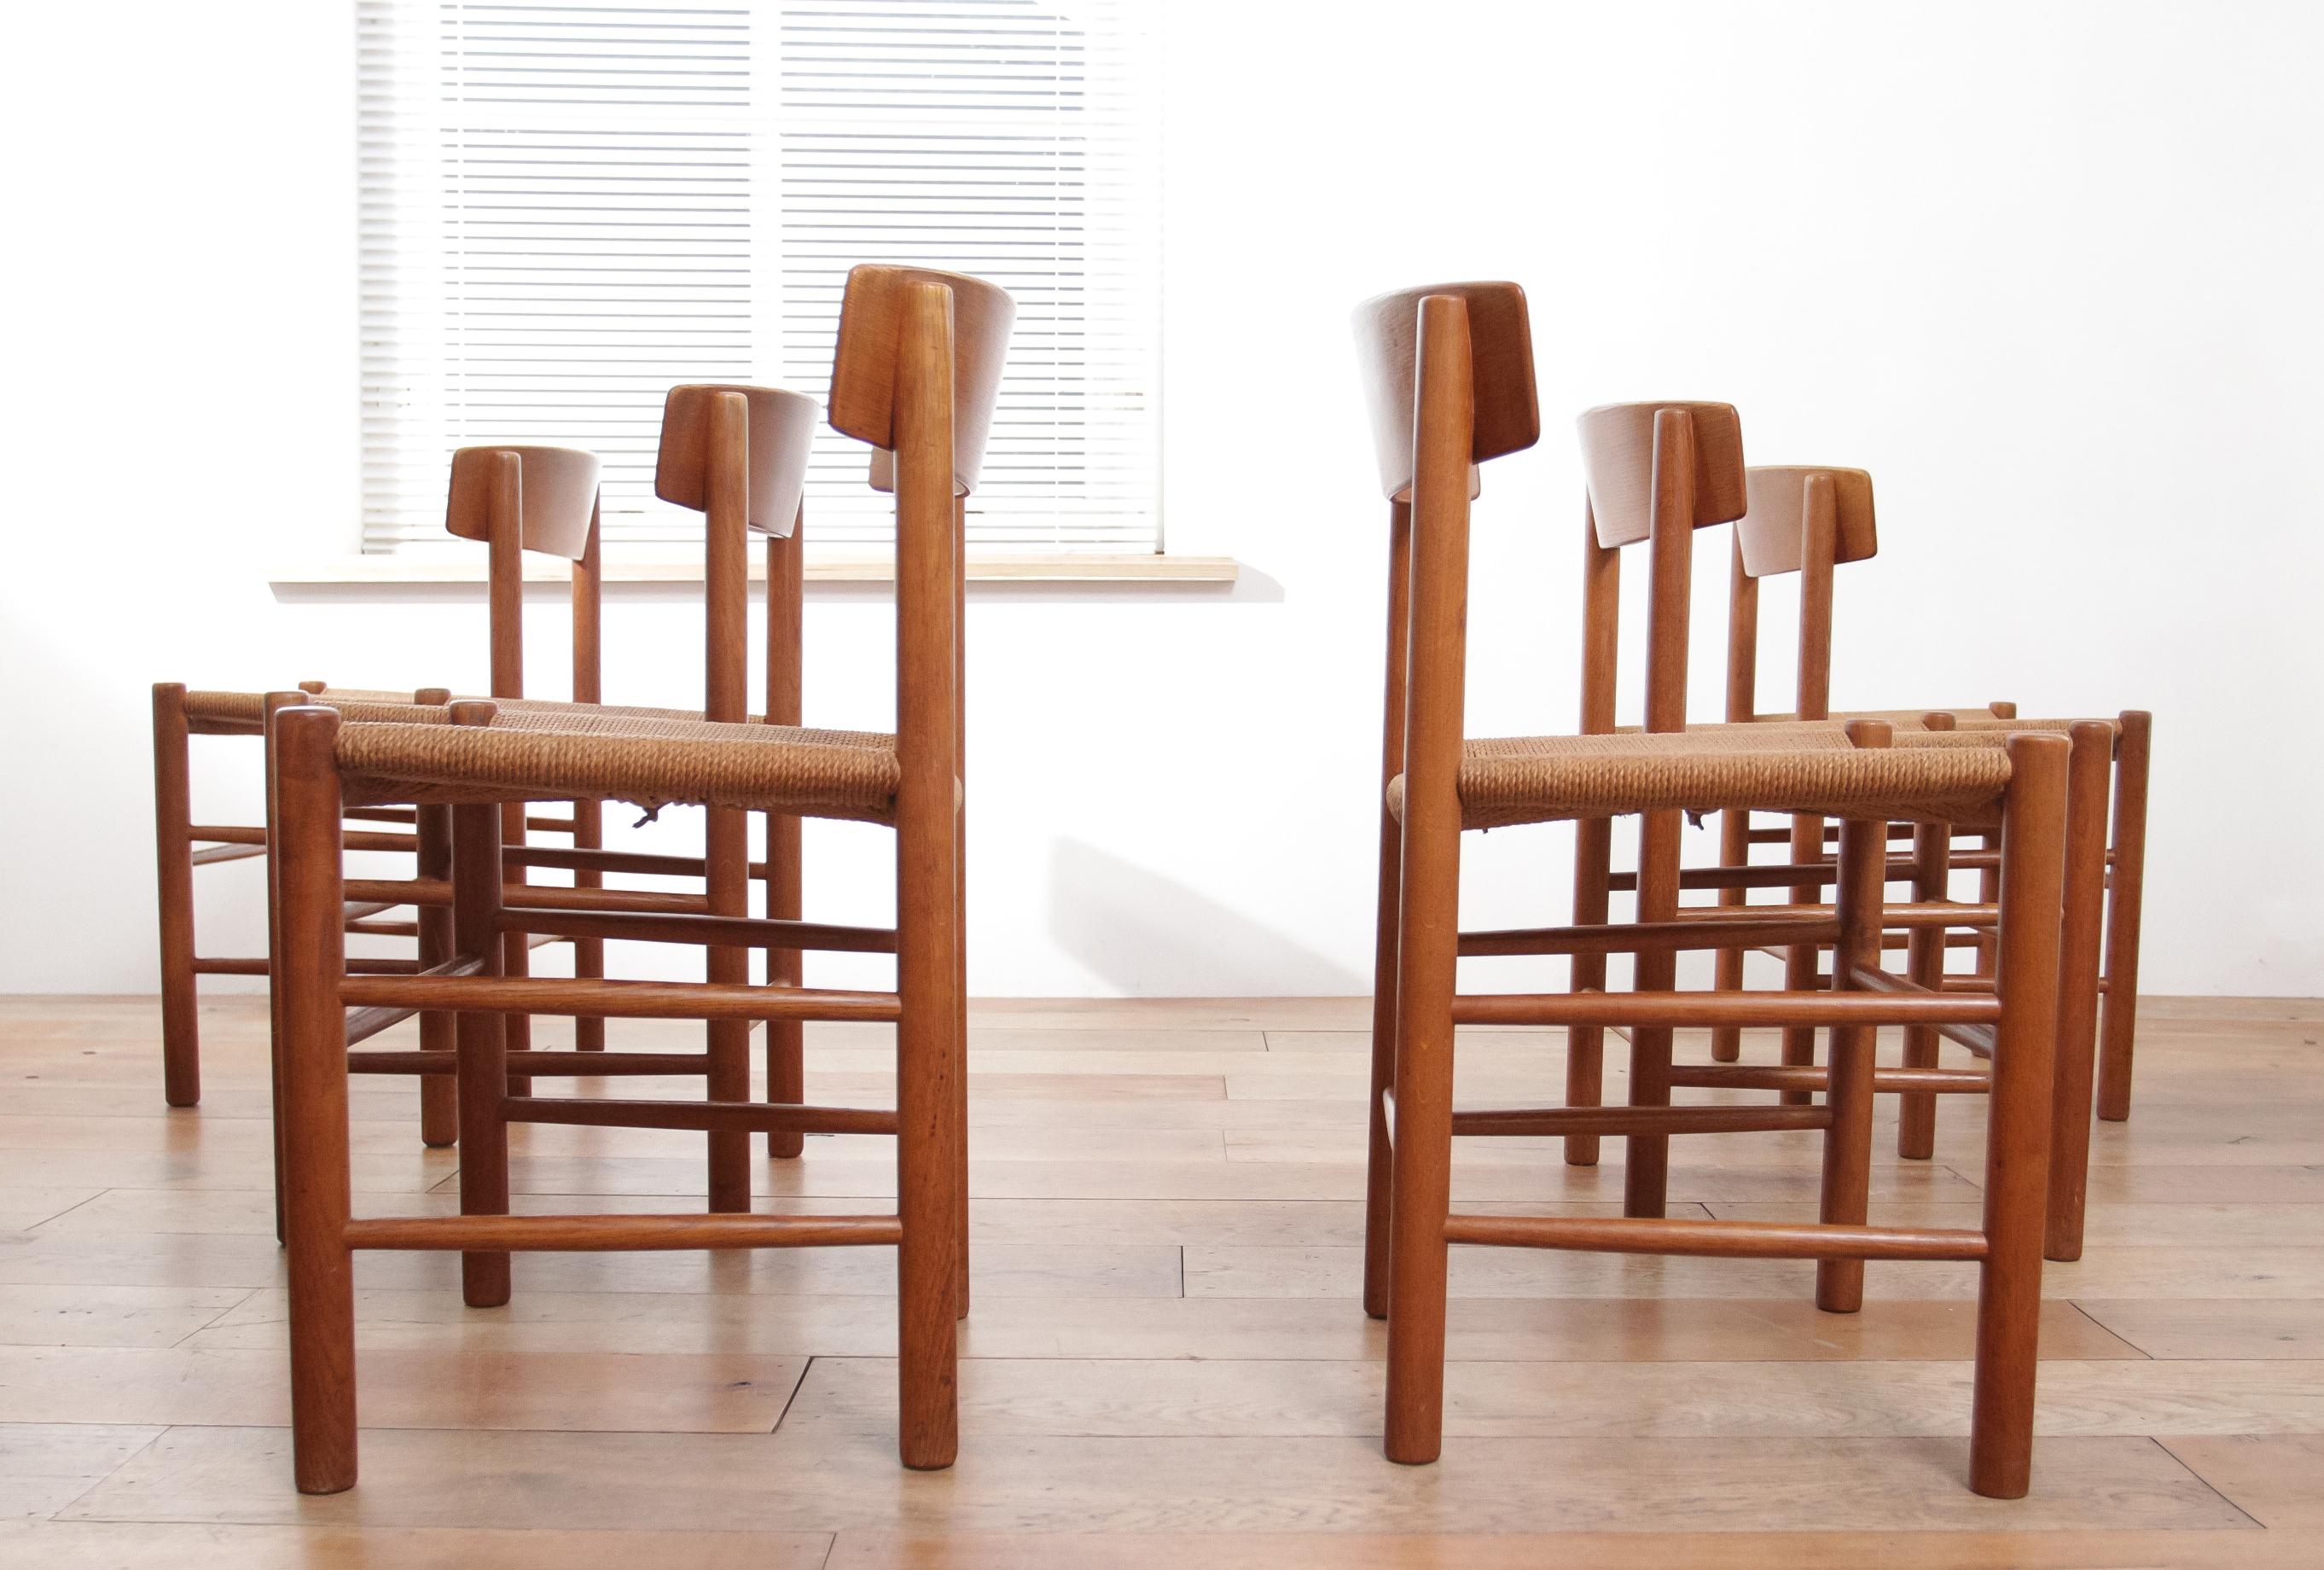 Les chaises présentées sont un exemple typique du design scandinave, probablement les chaises de salle à manger J39 conçues par le fabricant de meubles danois Børge Mogensen vers 1960. Caractérisées par leur forme à la fois simple et élégante, les